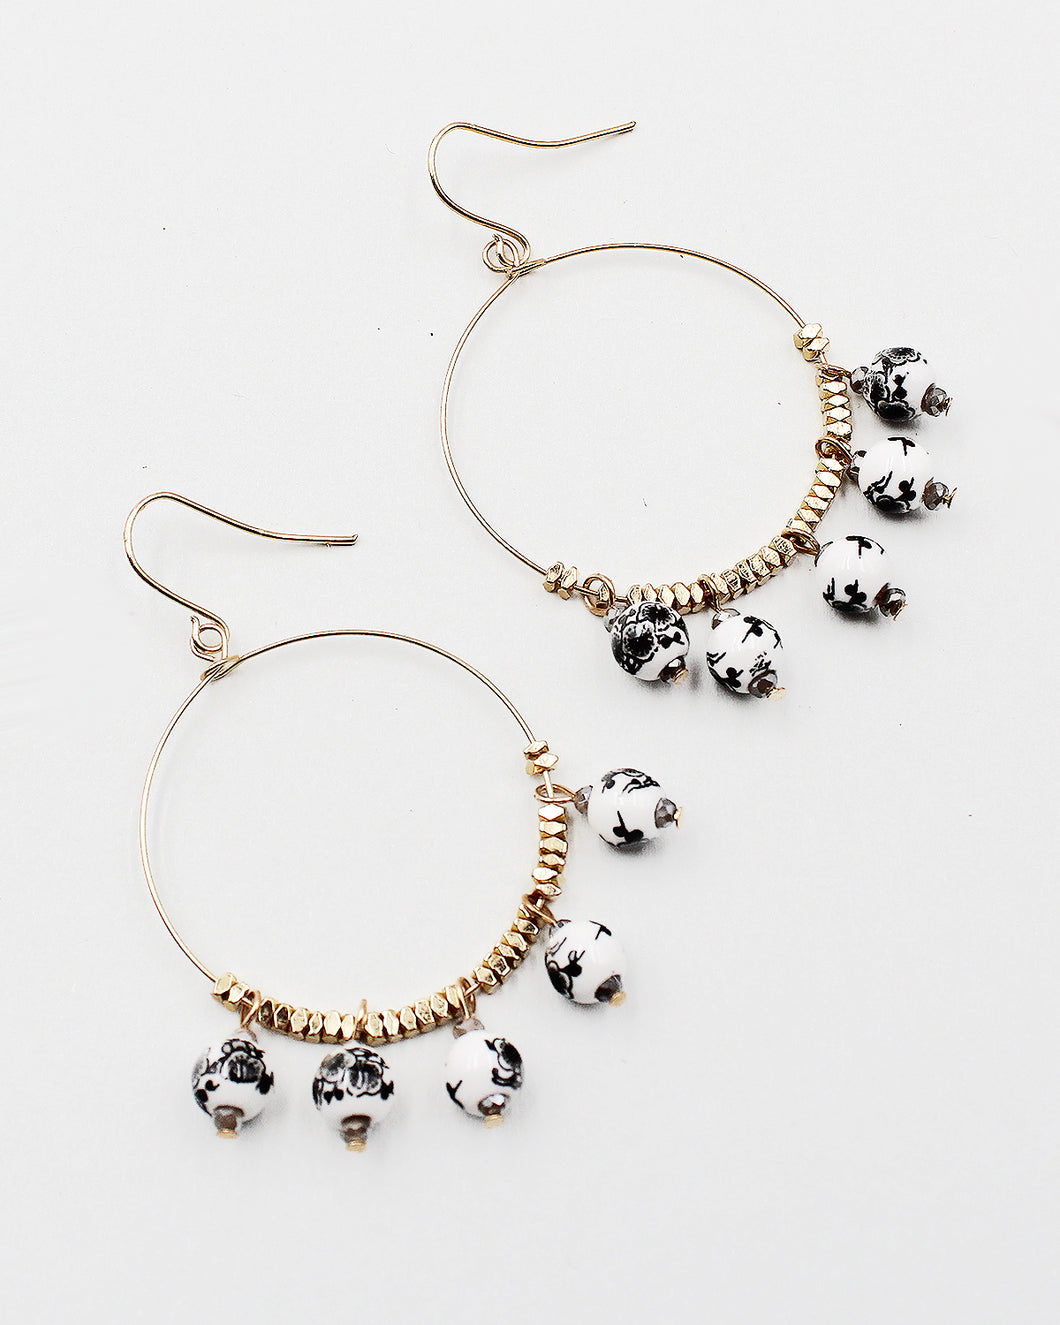 Flower Printed Resin Bead Earrings